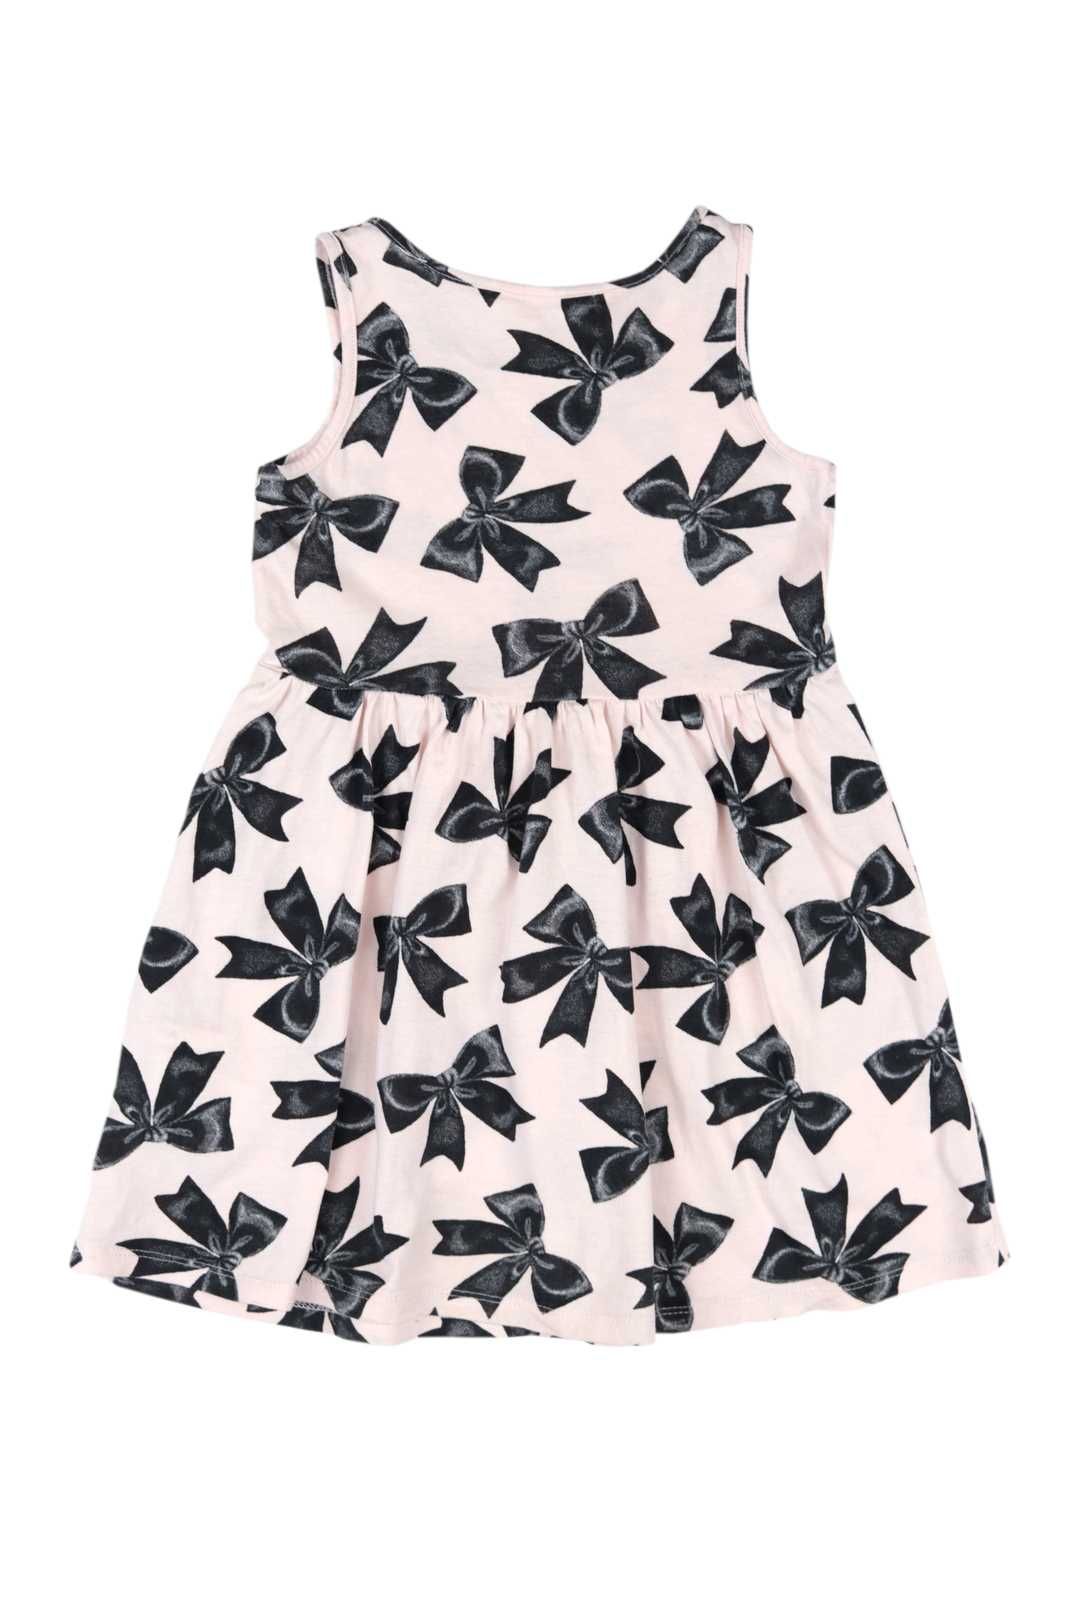 H&M sukienka pudrowy róż wzór kokardki 98/104